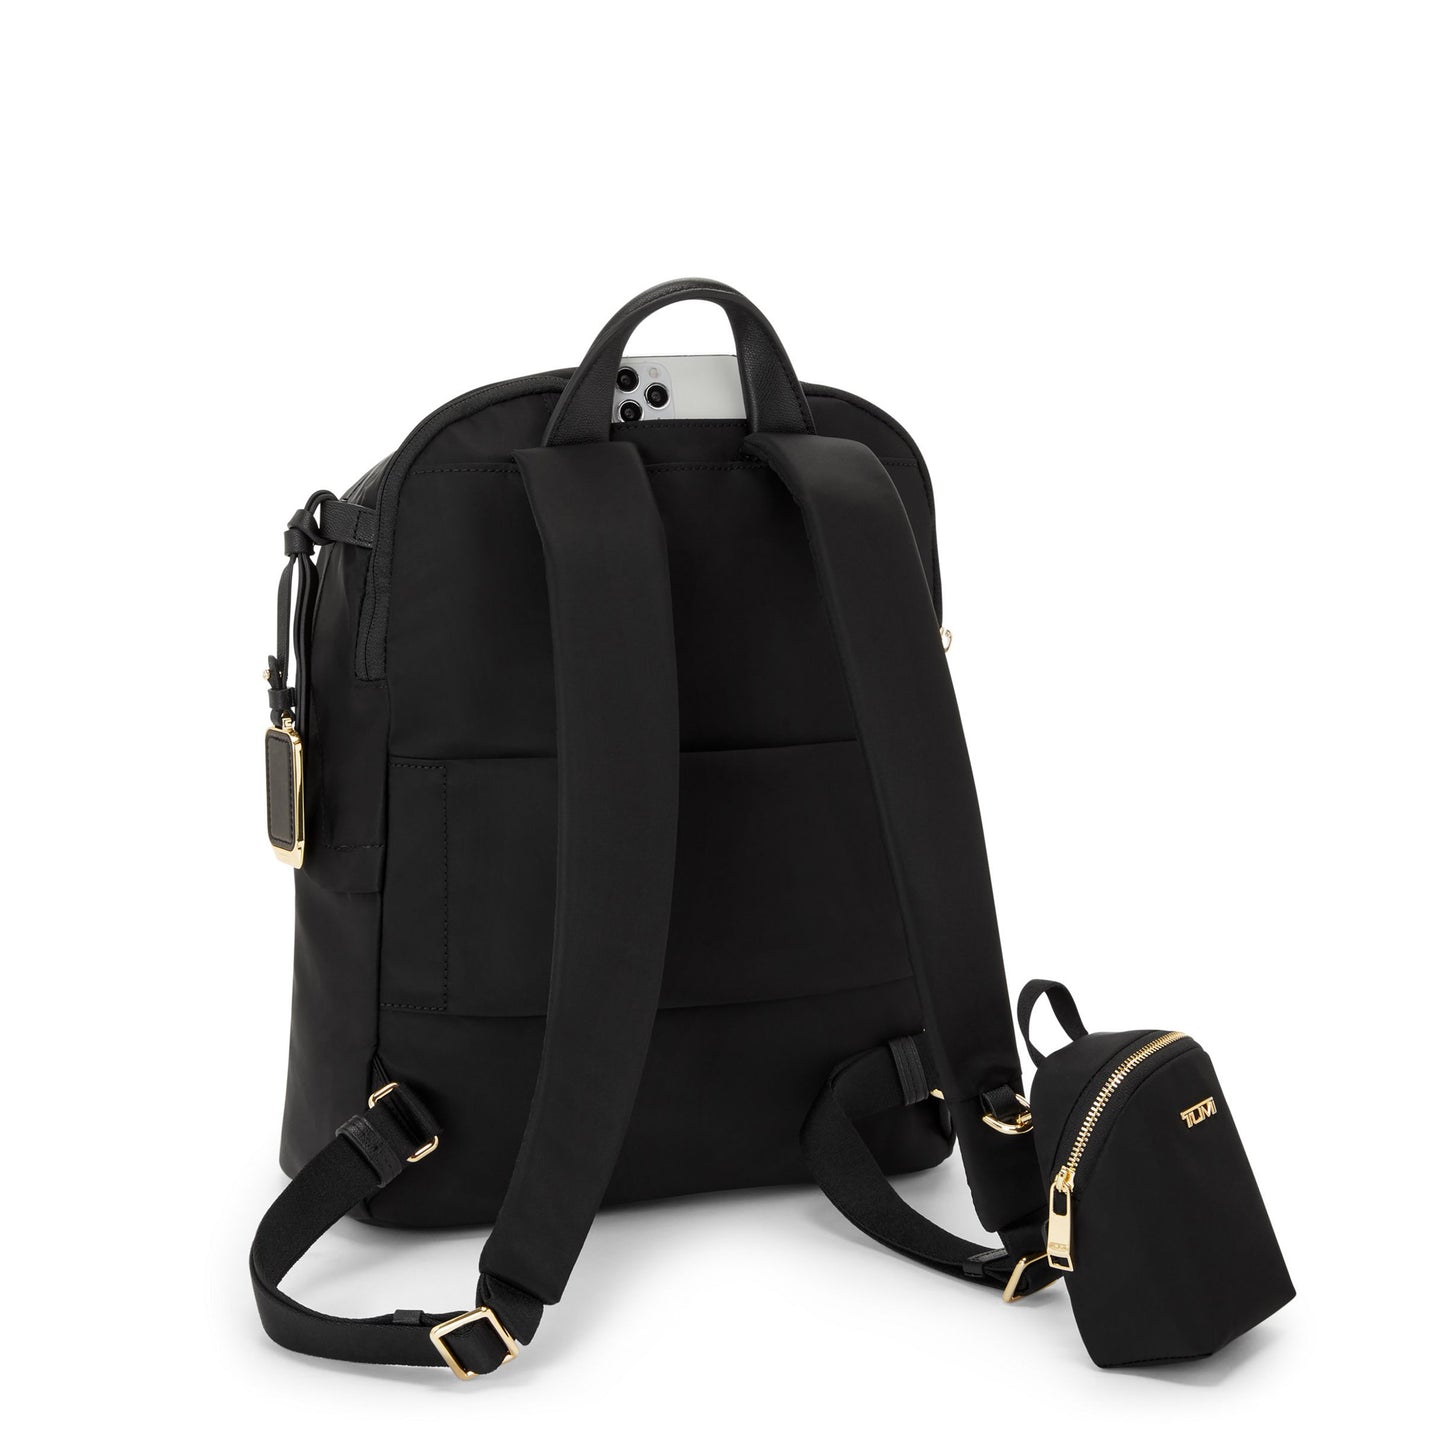 VOYAGEUR Halsey Backpack Black/Gold